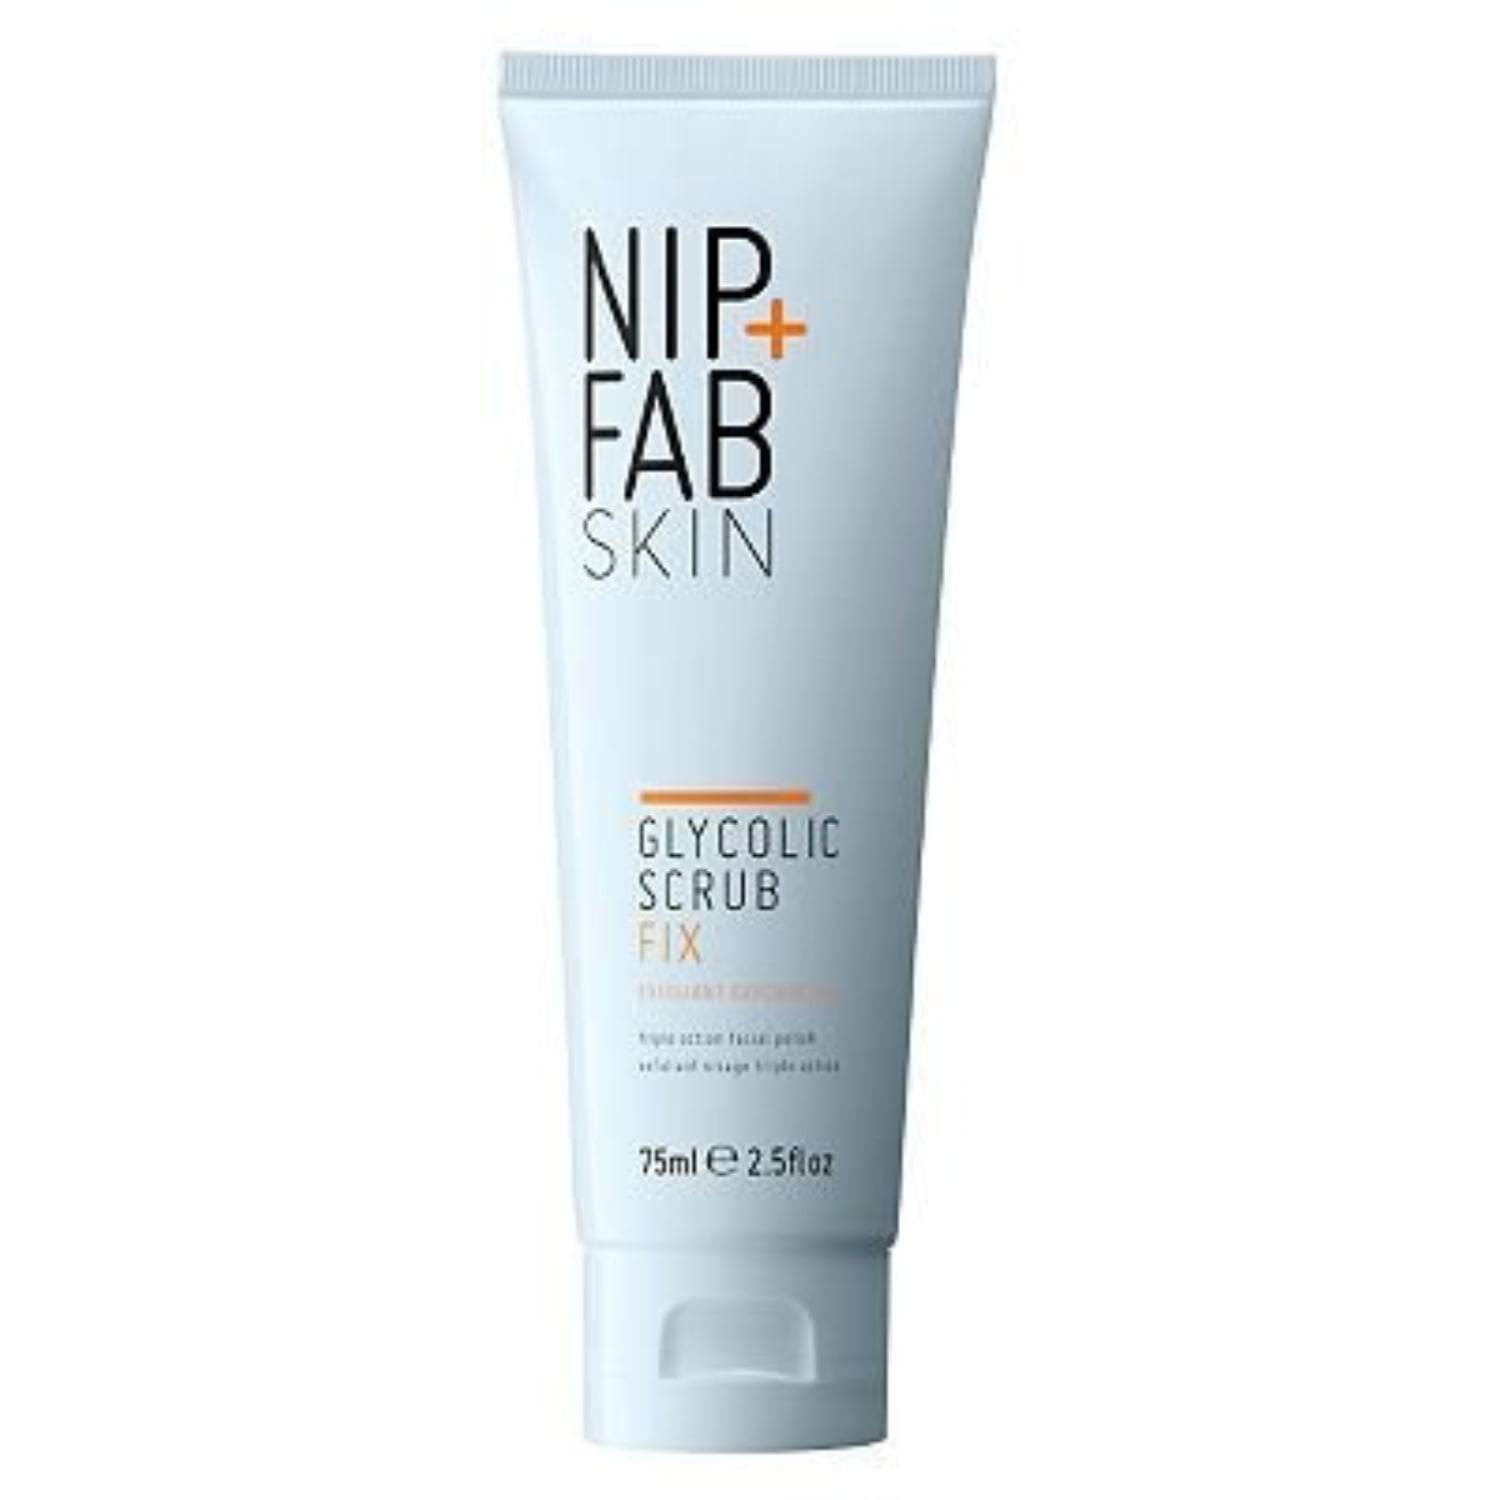 nip + fab cellulite fix body sculpting gel (150ml) - pack of 2 ...